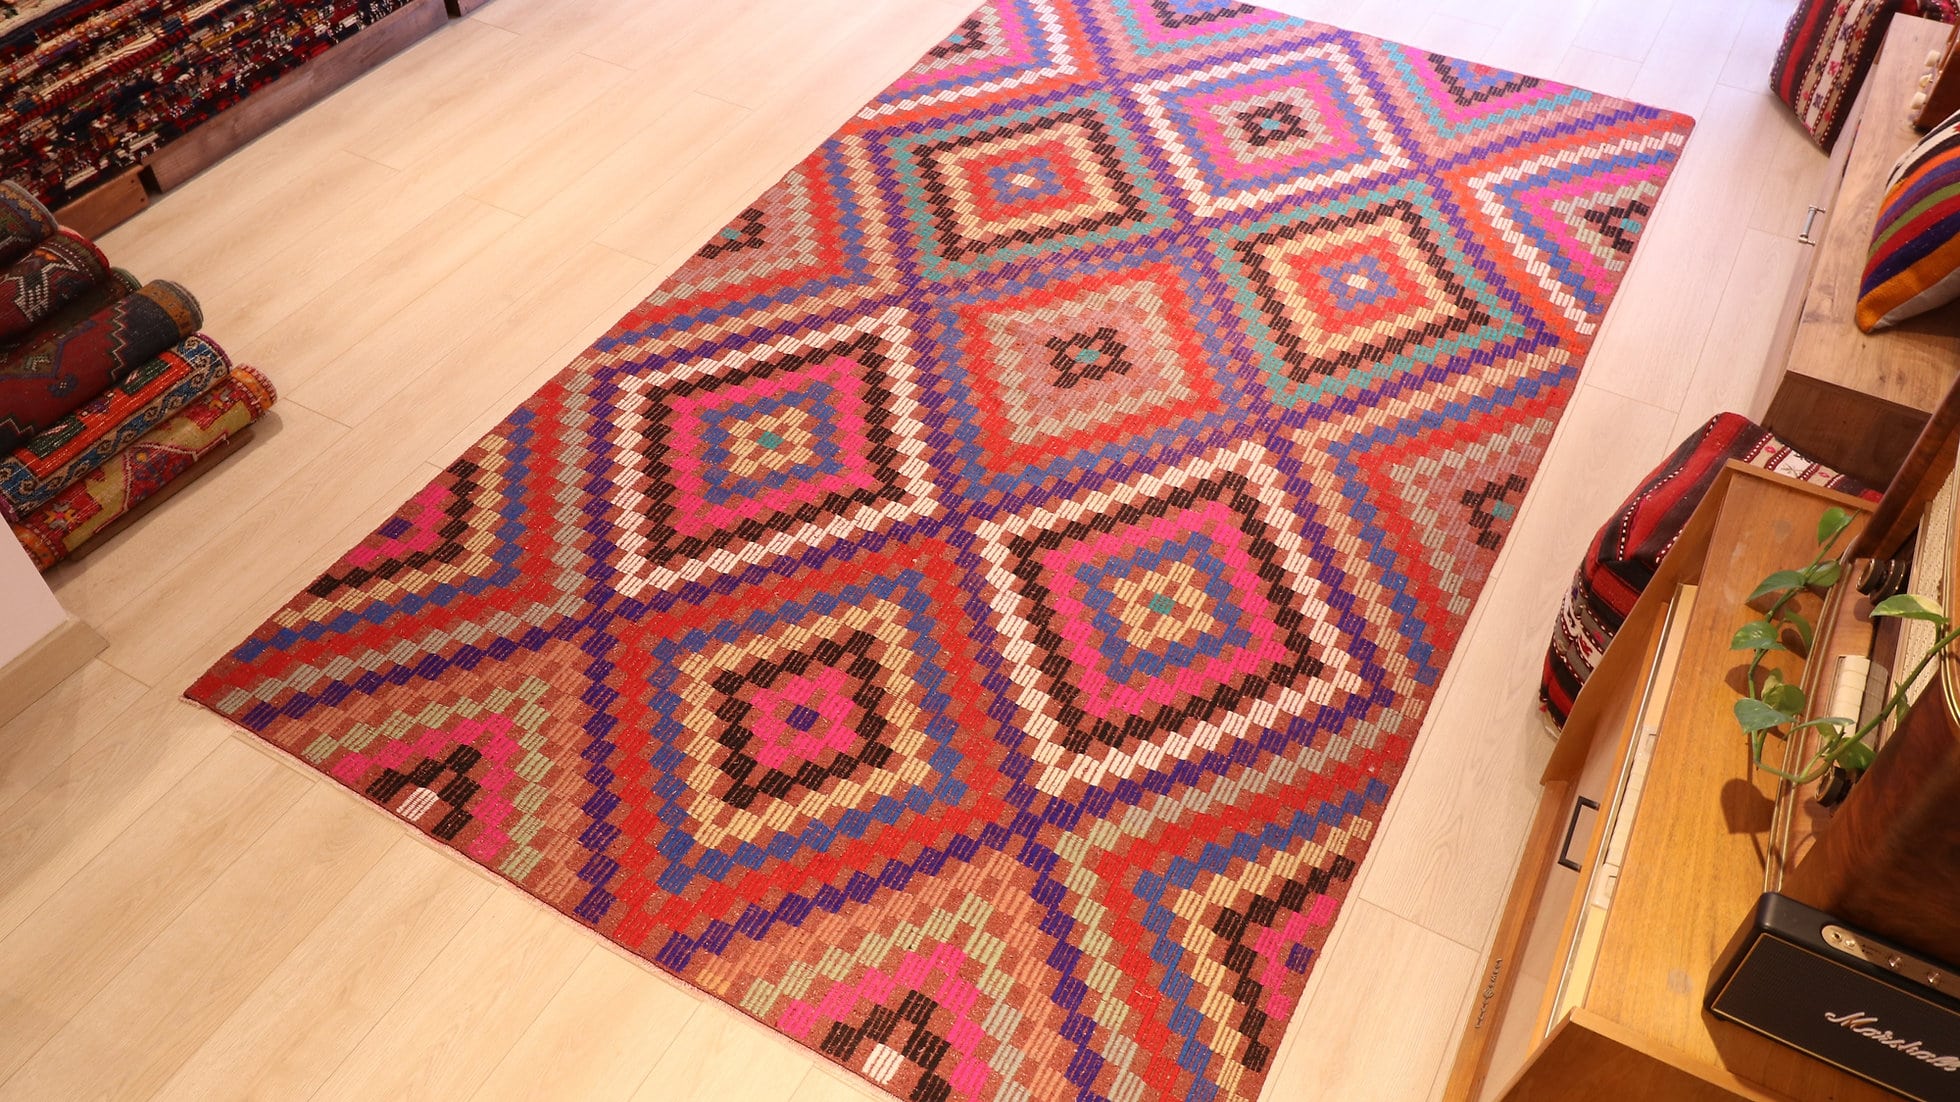 Vintage tribal Kilim rug in pink, blue, purple